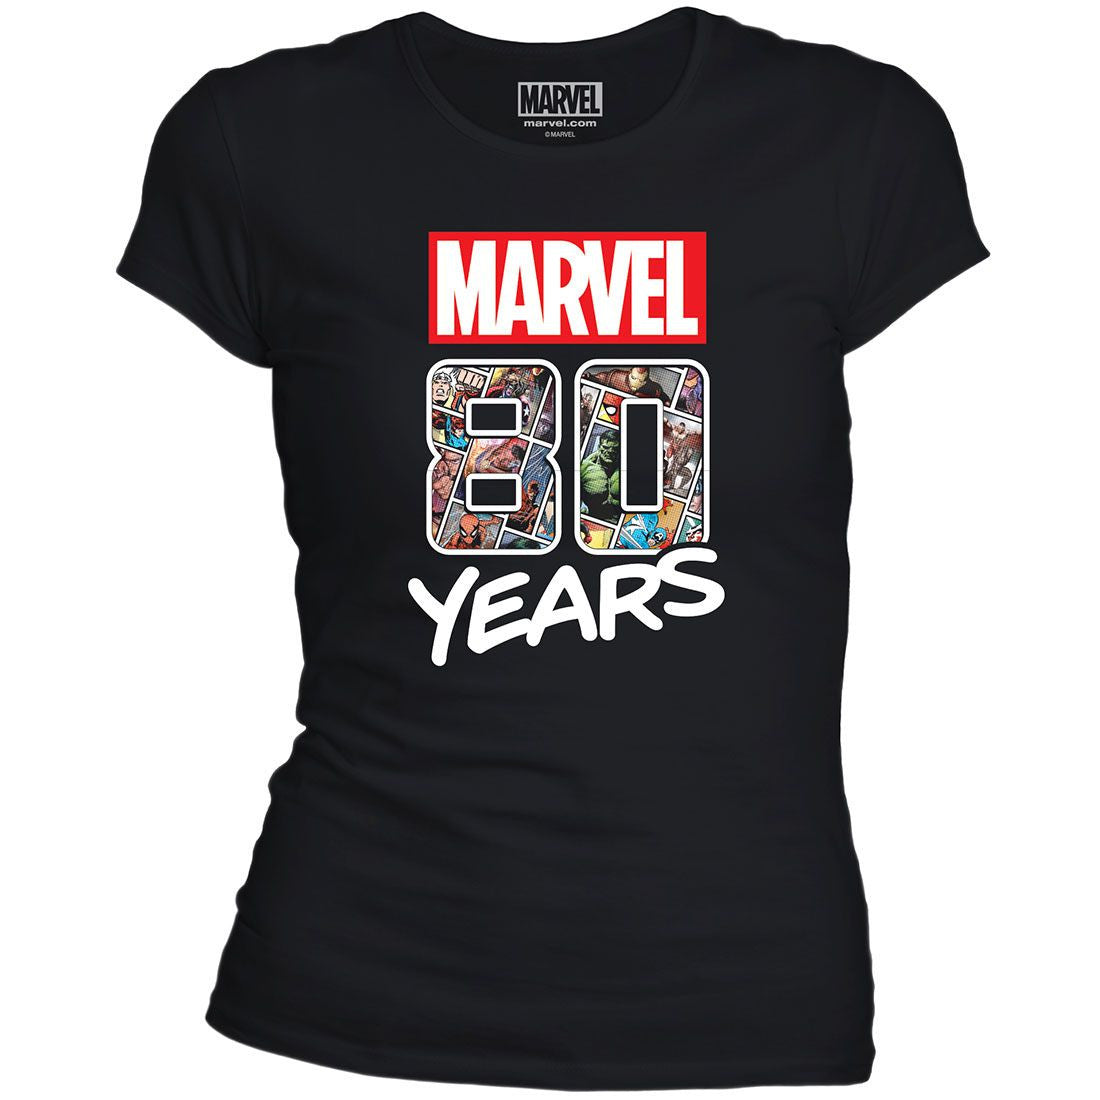 Women's Marvel T-shirt - Marvel 80 Years